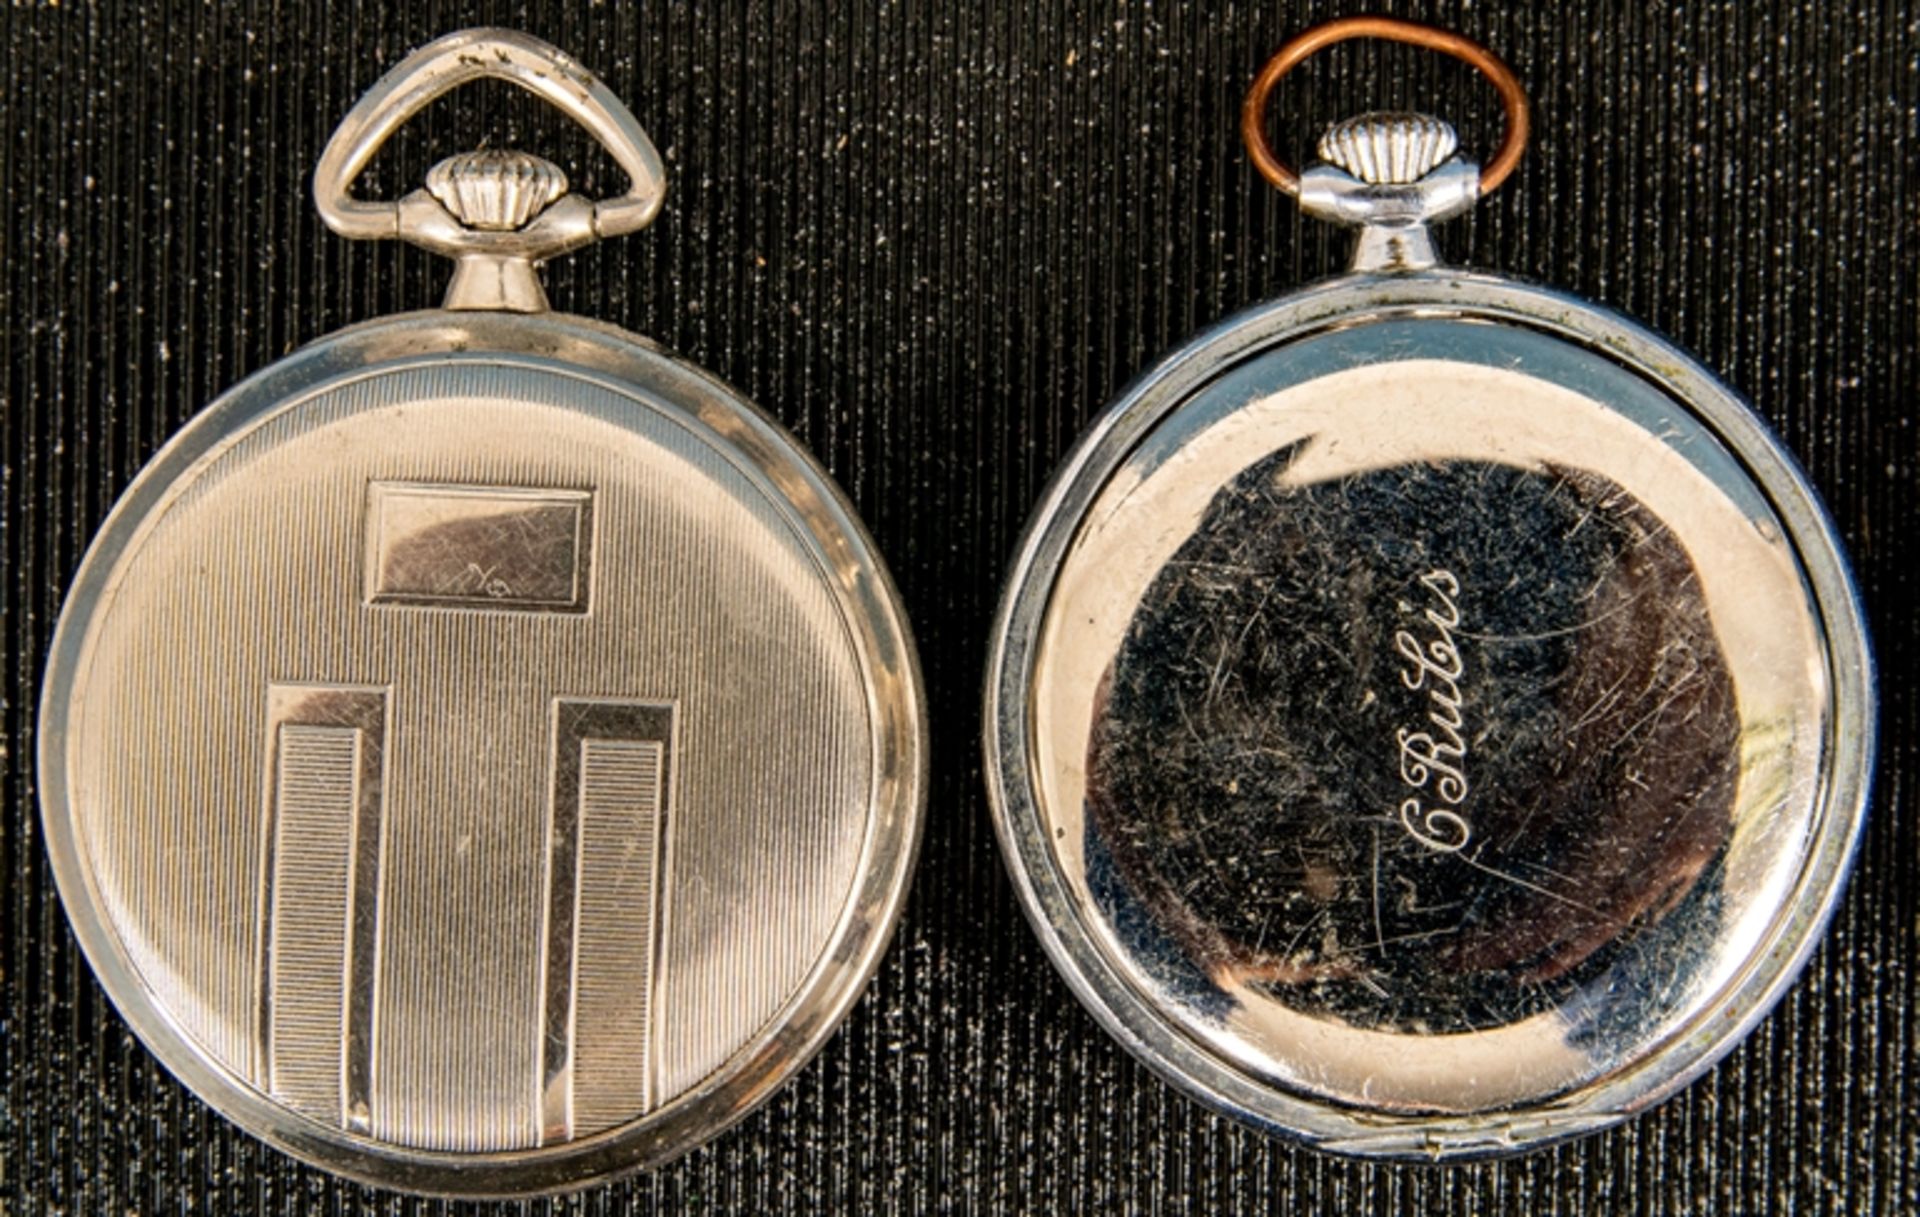 8teiliges Konvolut versch. offener Herrentaschenuhren, alle Gehäuse in Silber; versch. Alter, Größe - Bild 9 aus 13